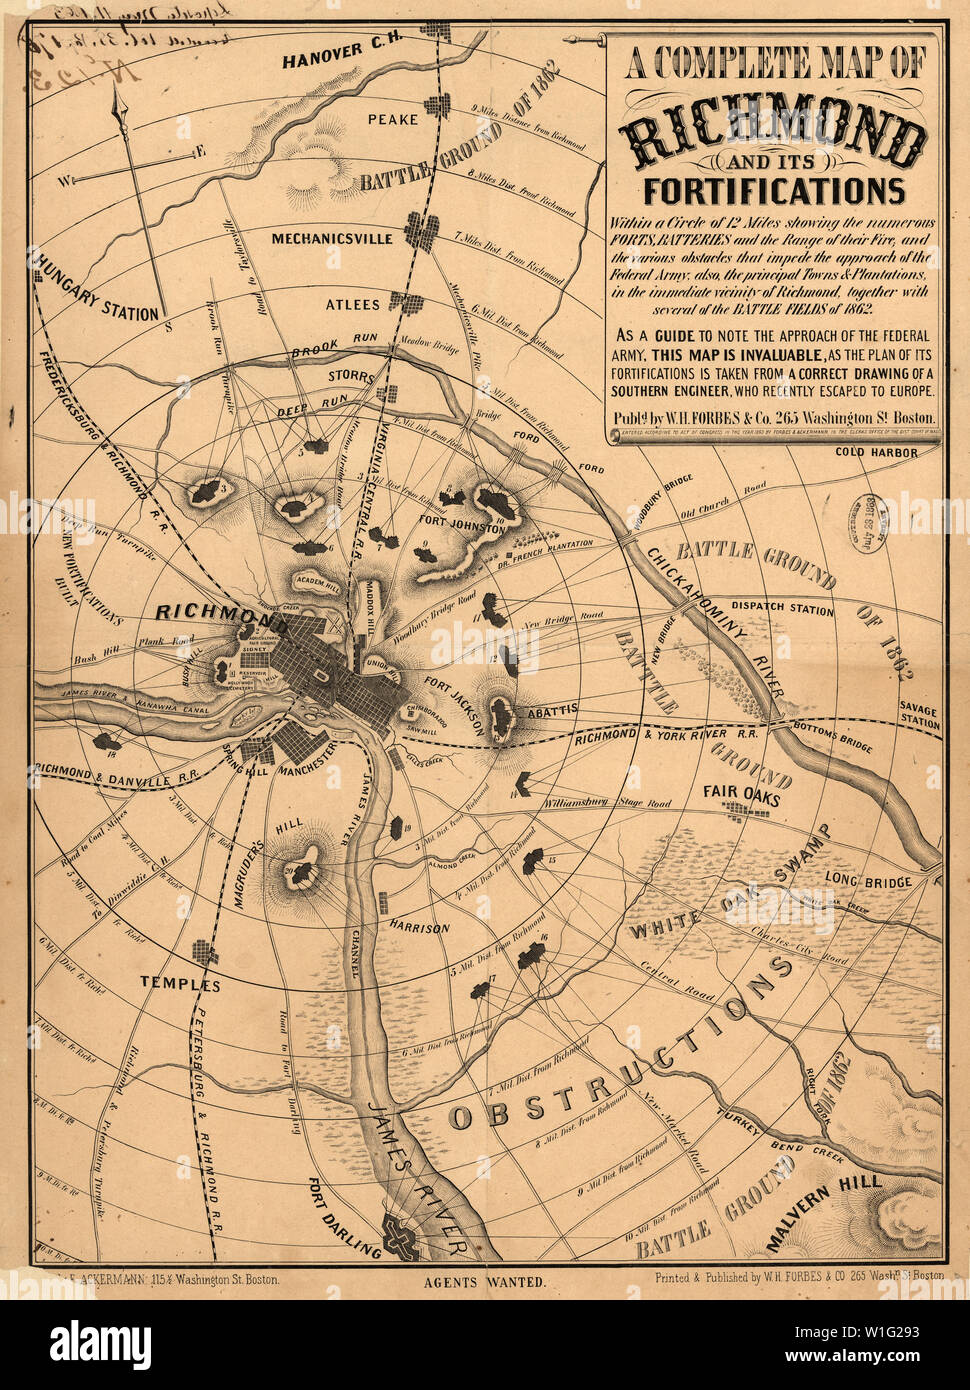 Eine komplette Karte von Richmond und seine Befestigungen, Amerikanischer Bürgerkrieg, von William H. Forbes & Co., 1863 veröffentlicht. Stockfoto